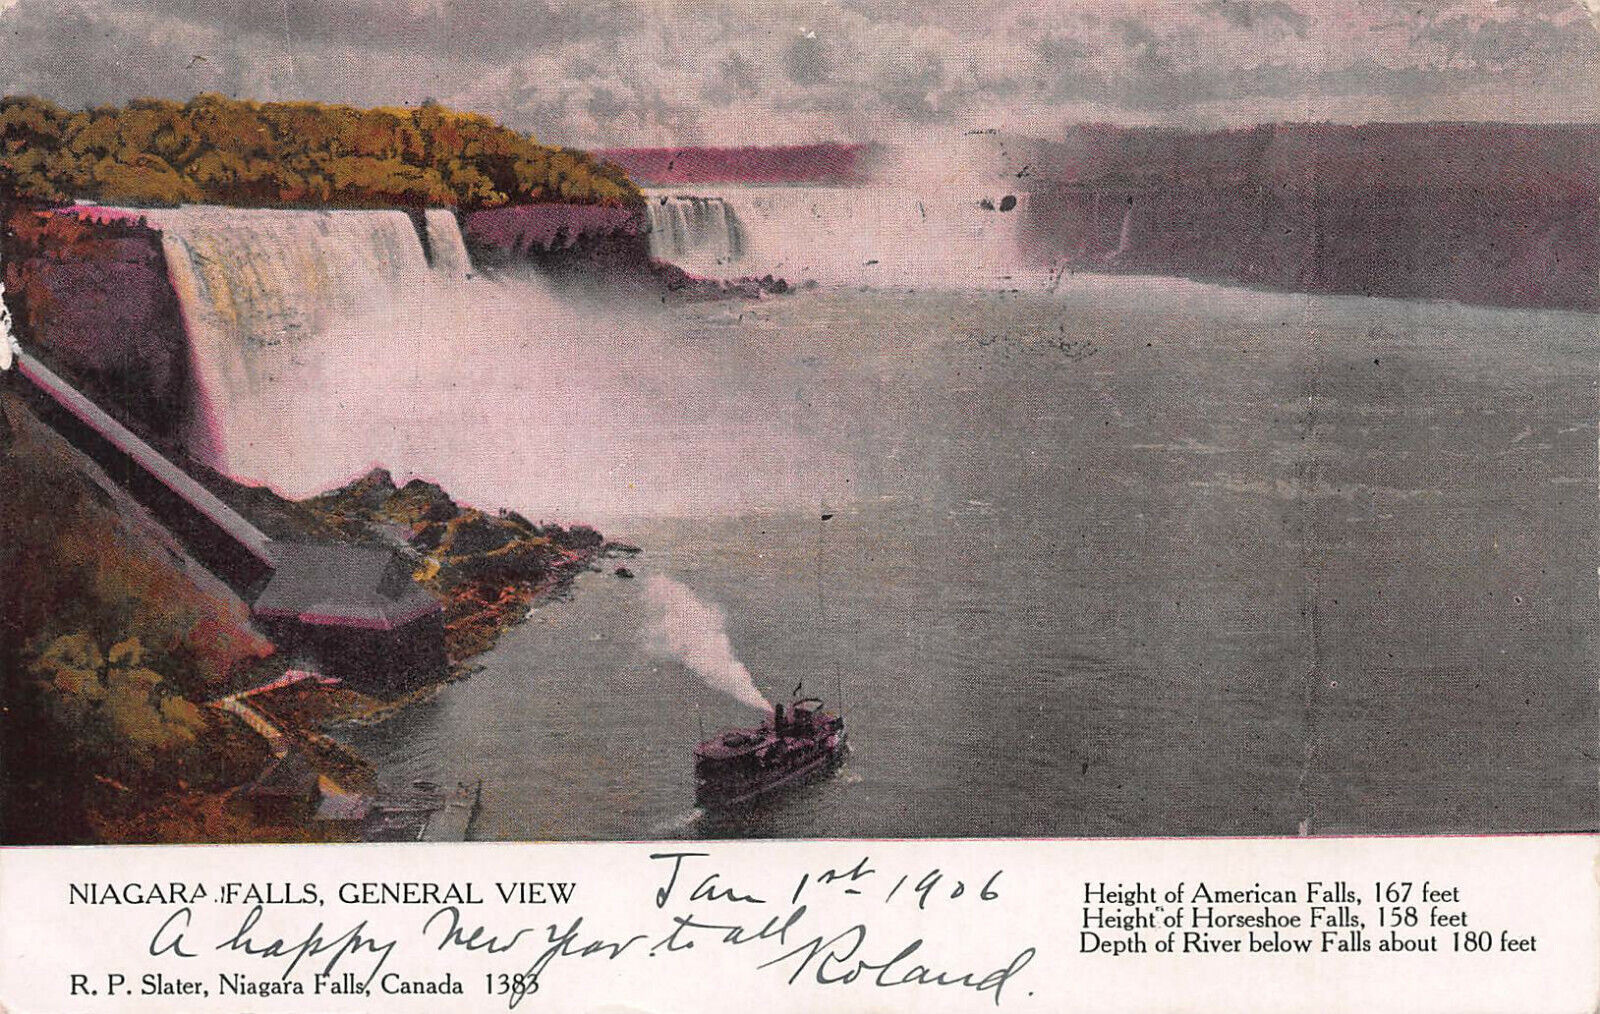 Niagara Falls, General View, Canadian Souvenir Postcard, Used in 1906